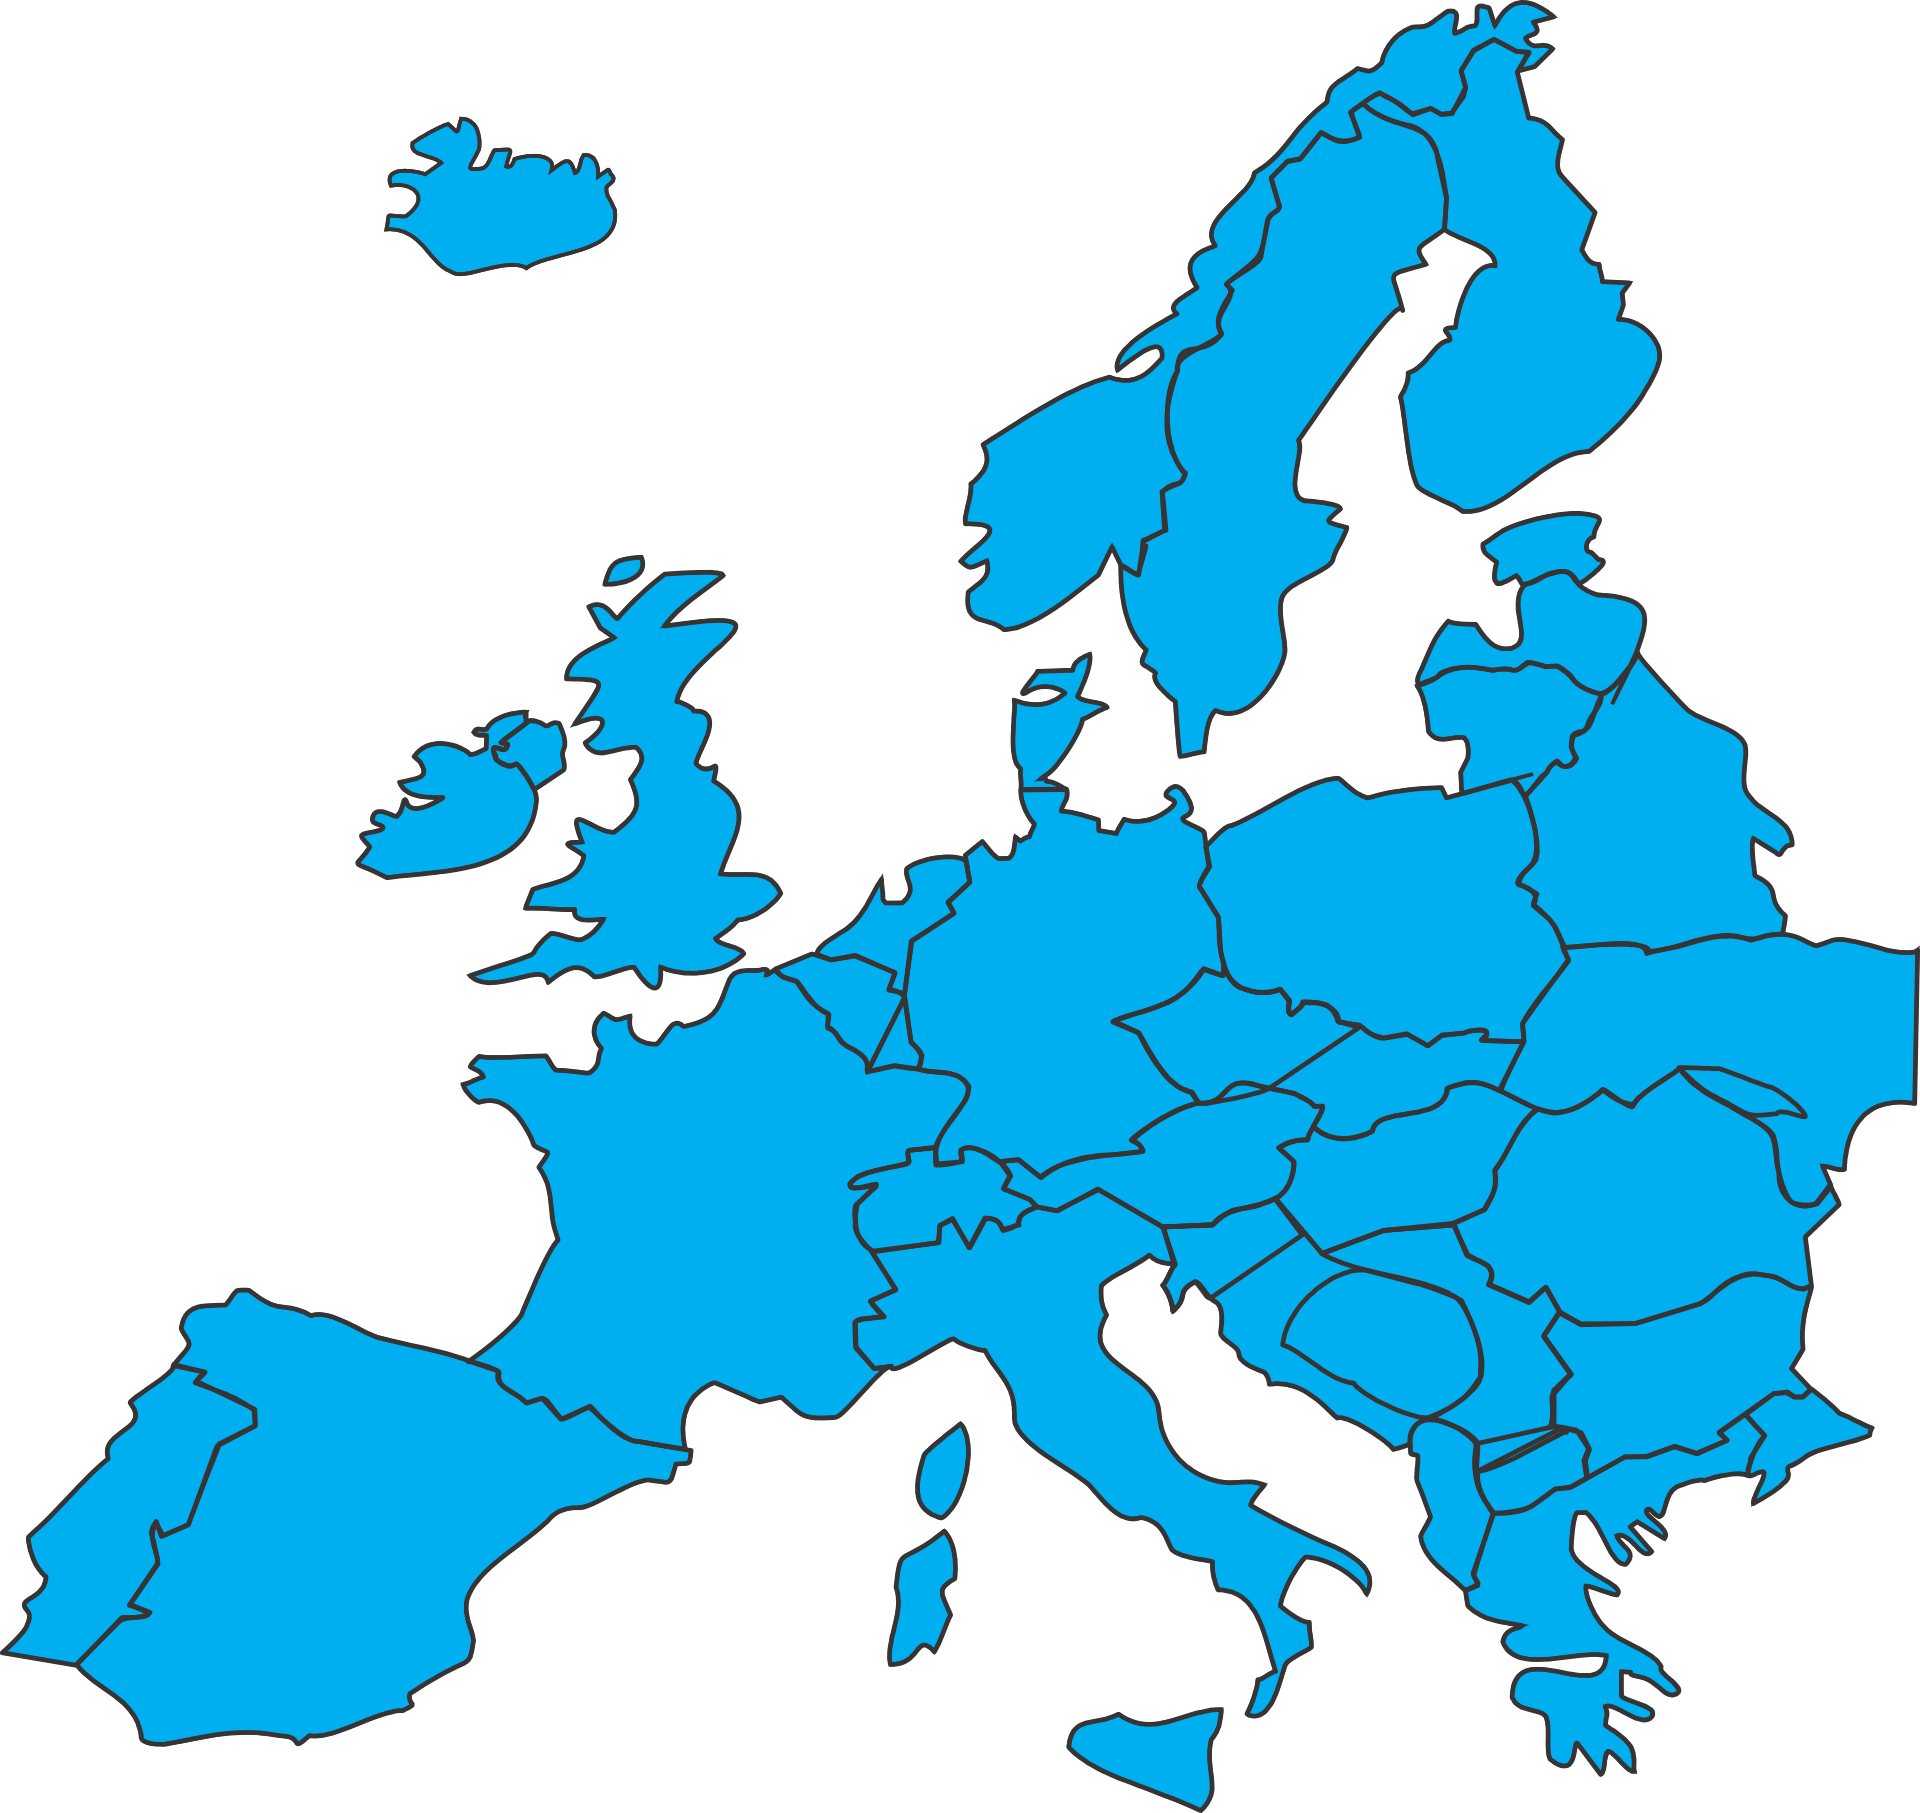 Europa und. Карта - Европа. Очертания Европы. Векторная карта Европы. Европа очертание континента.